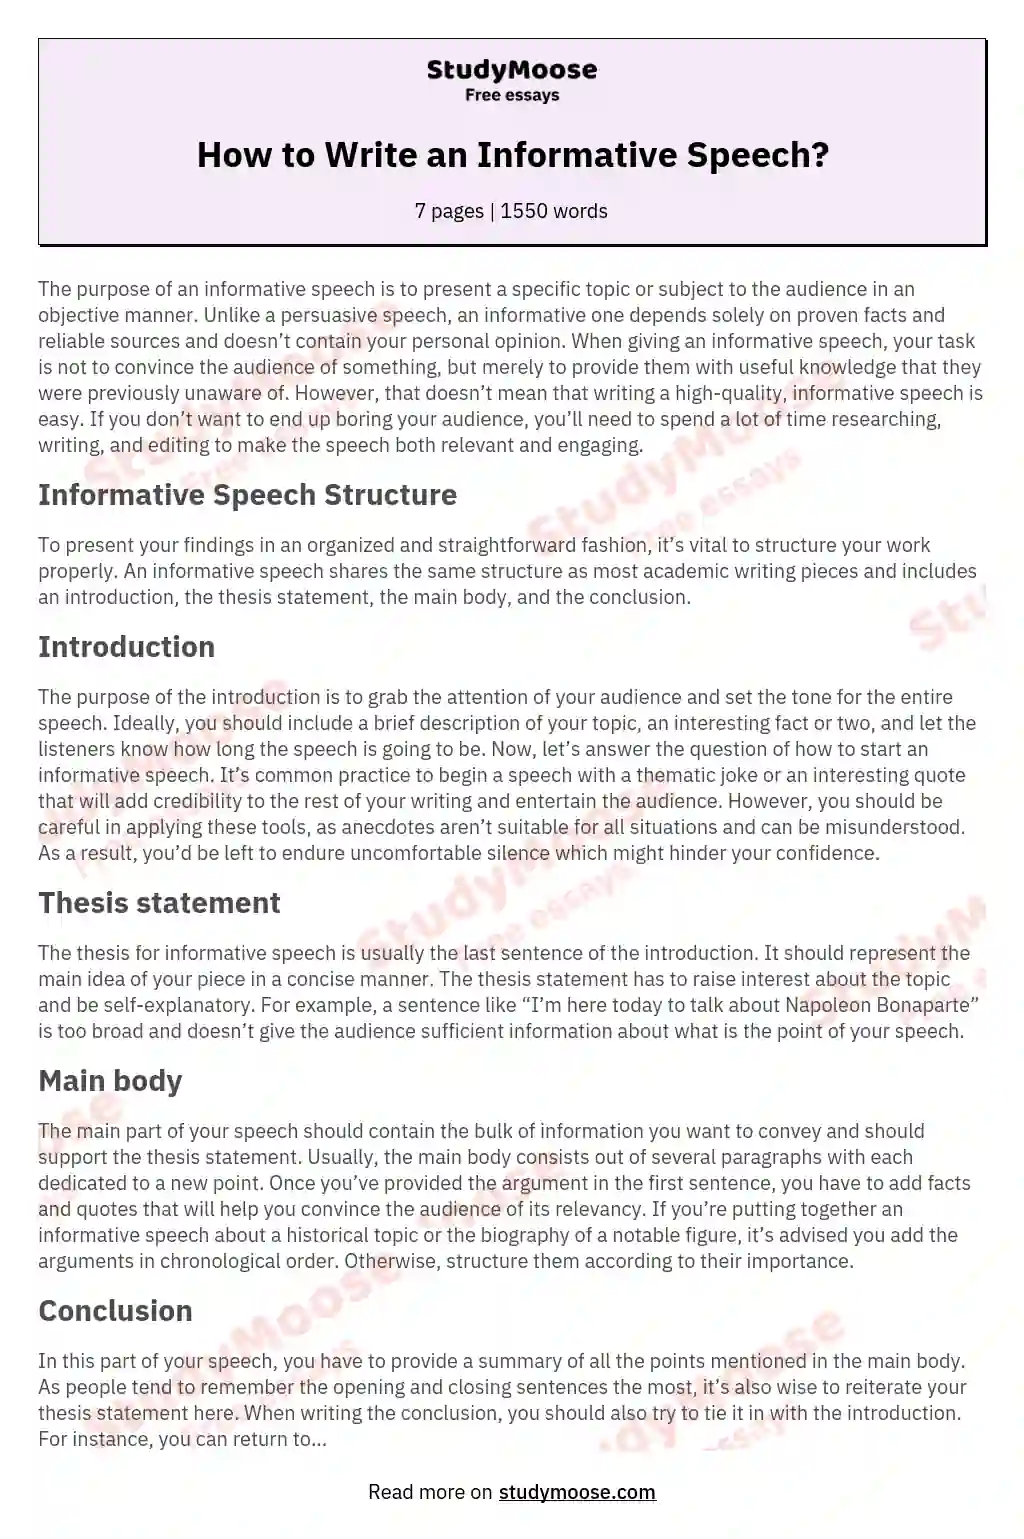 How to Write an Informative Speech? essay